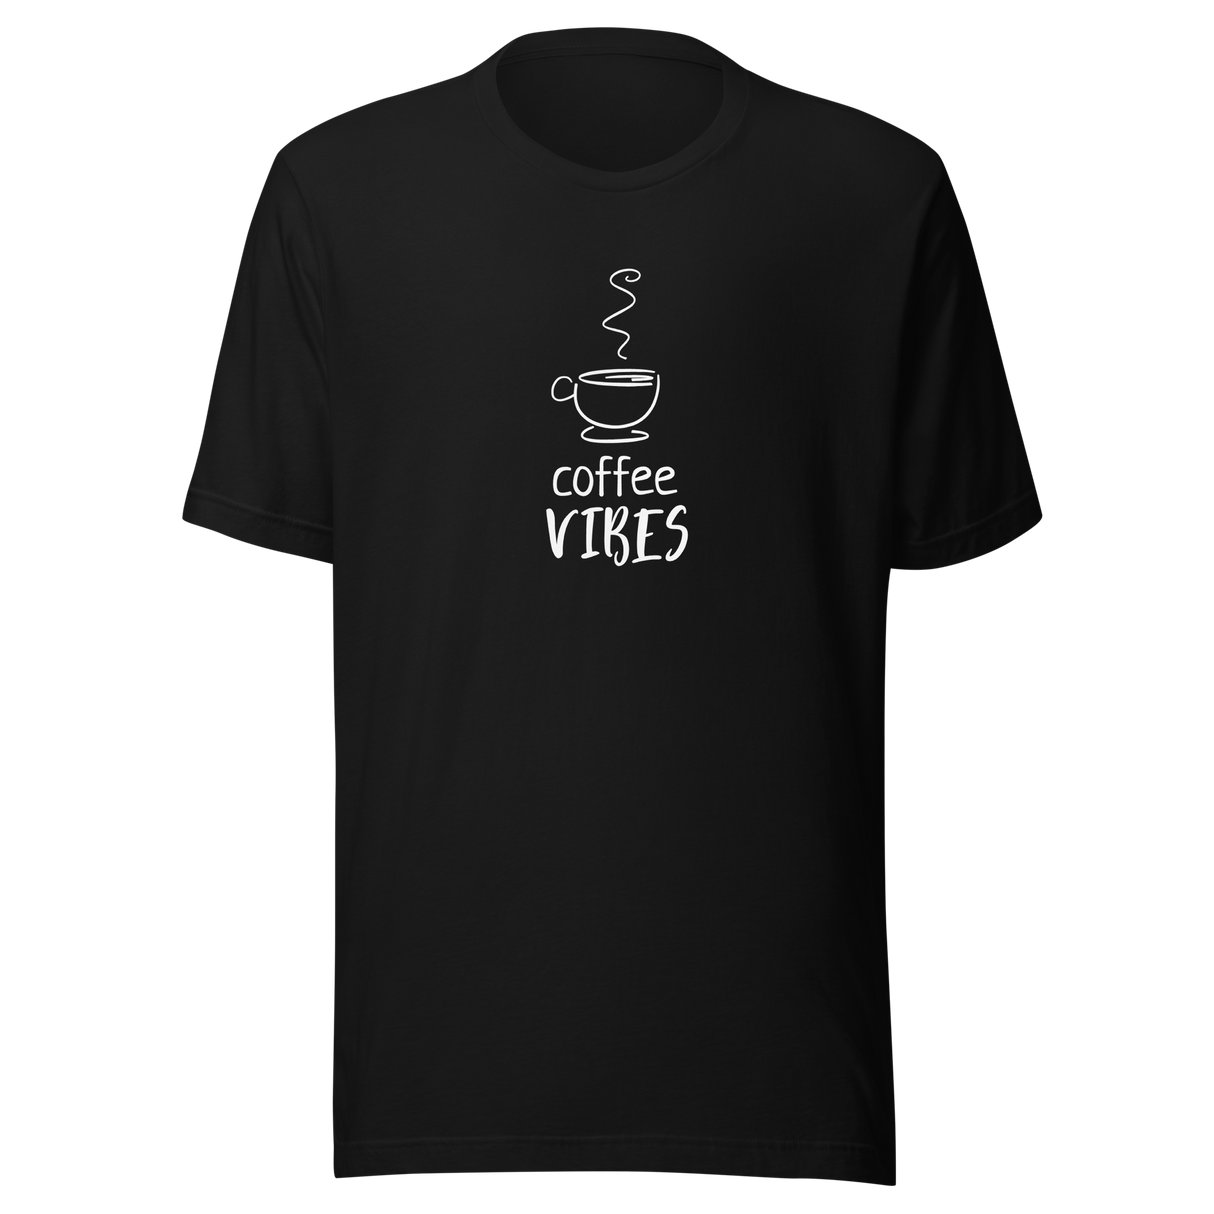 coffee-vibes-coffee-tee-good-vibes-t-shirt-vibes-tee-coffee-t-shirt-caffeine-tee#color_black